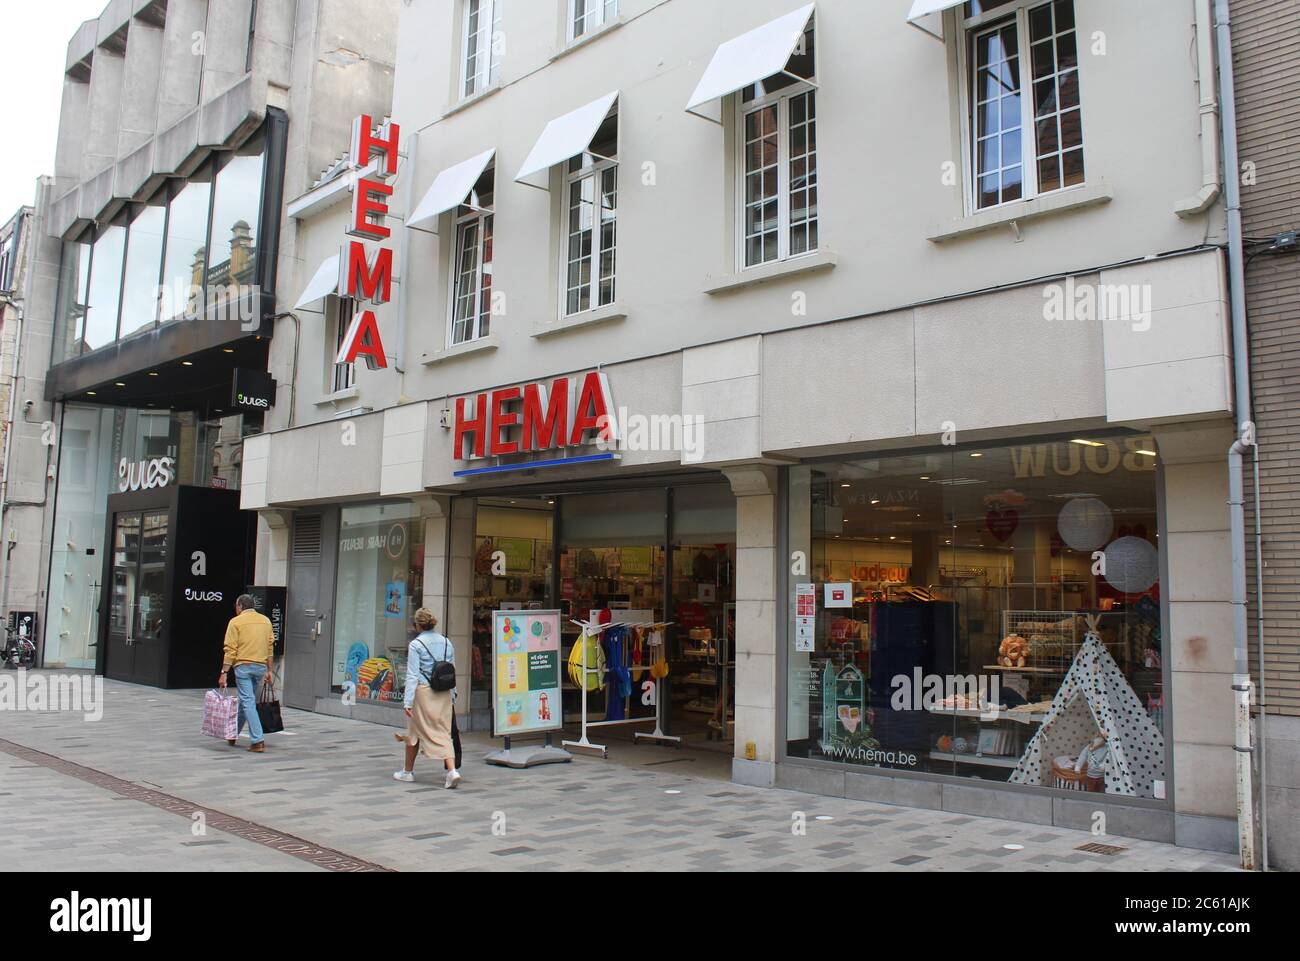 AALST, BELGIEN, 6. JULI 2020: Außenansicht eines HEMA-Einzelhandelsladens in Flandern. HEMA ist eine niederländische multinationale Varieté-Kette, die sich durch rel auszeichnet Stockfoto